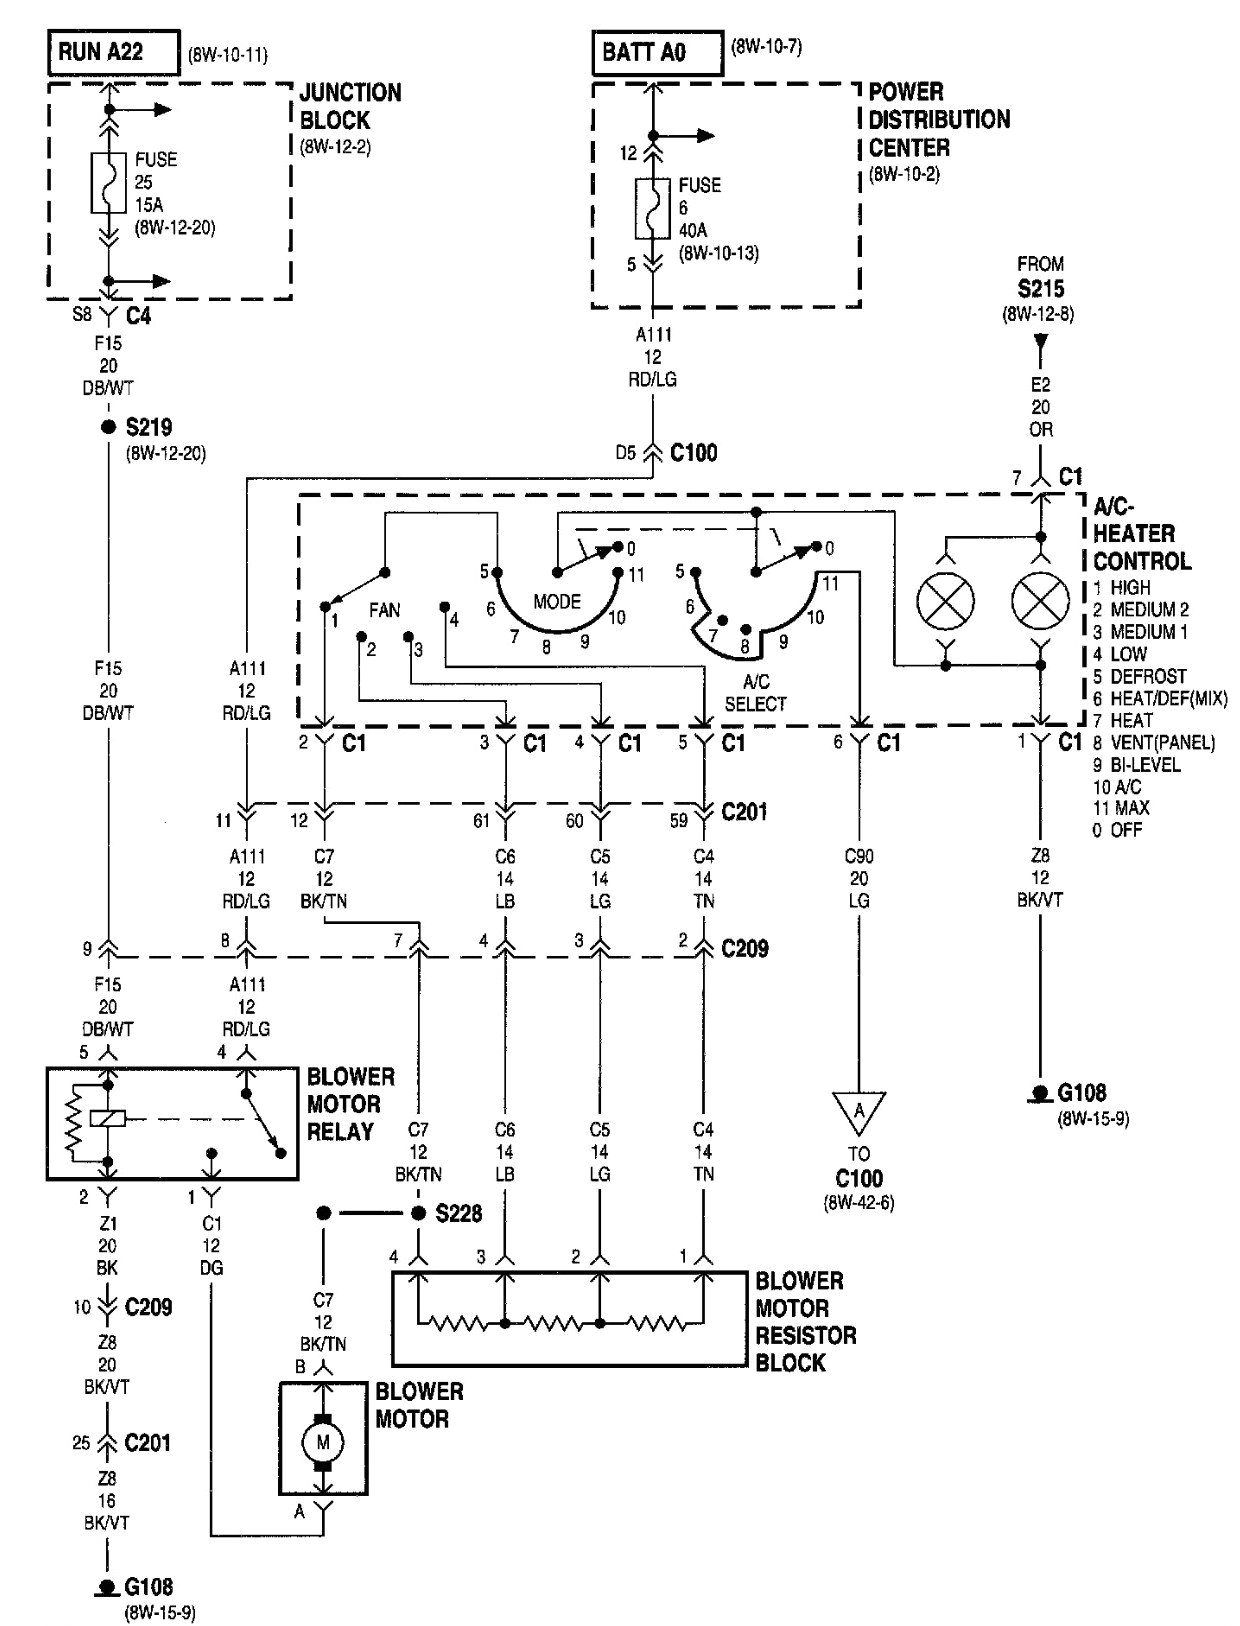 rv wiring 2000 jeep book diagram schema rv wiring 2000 jeep